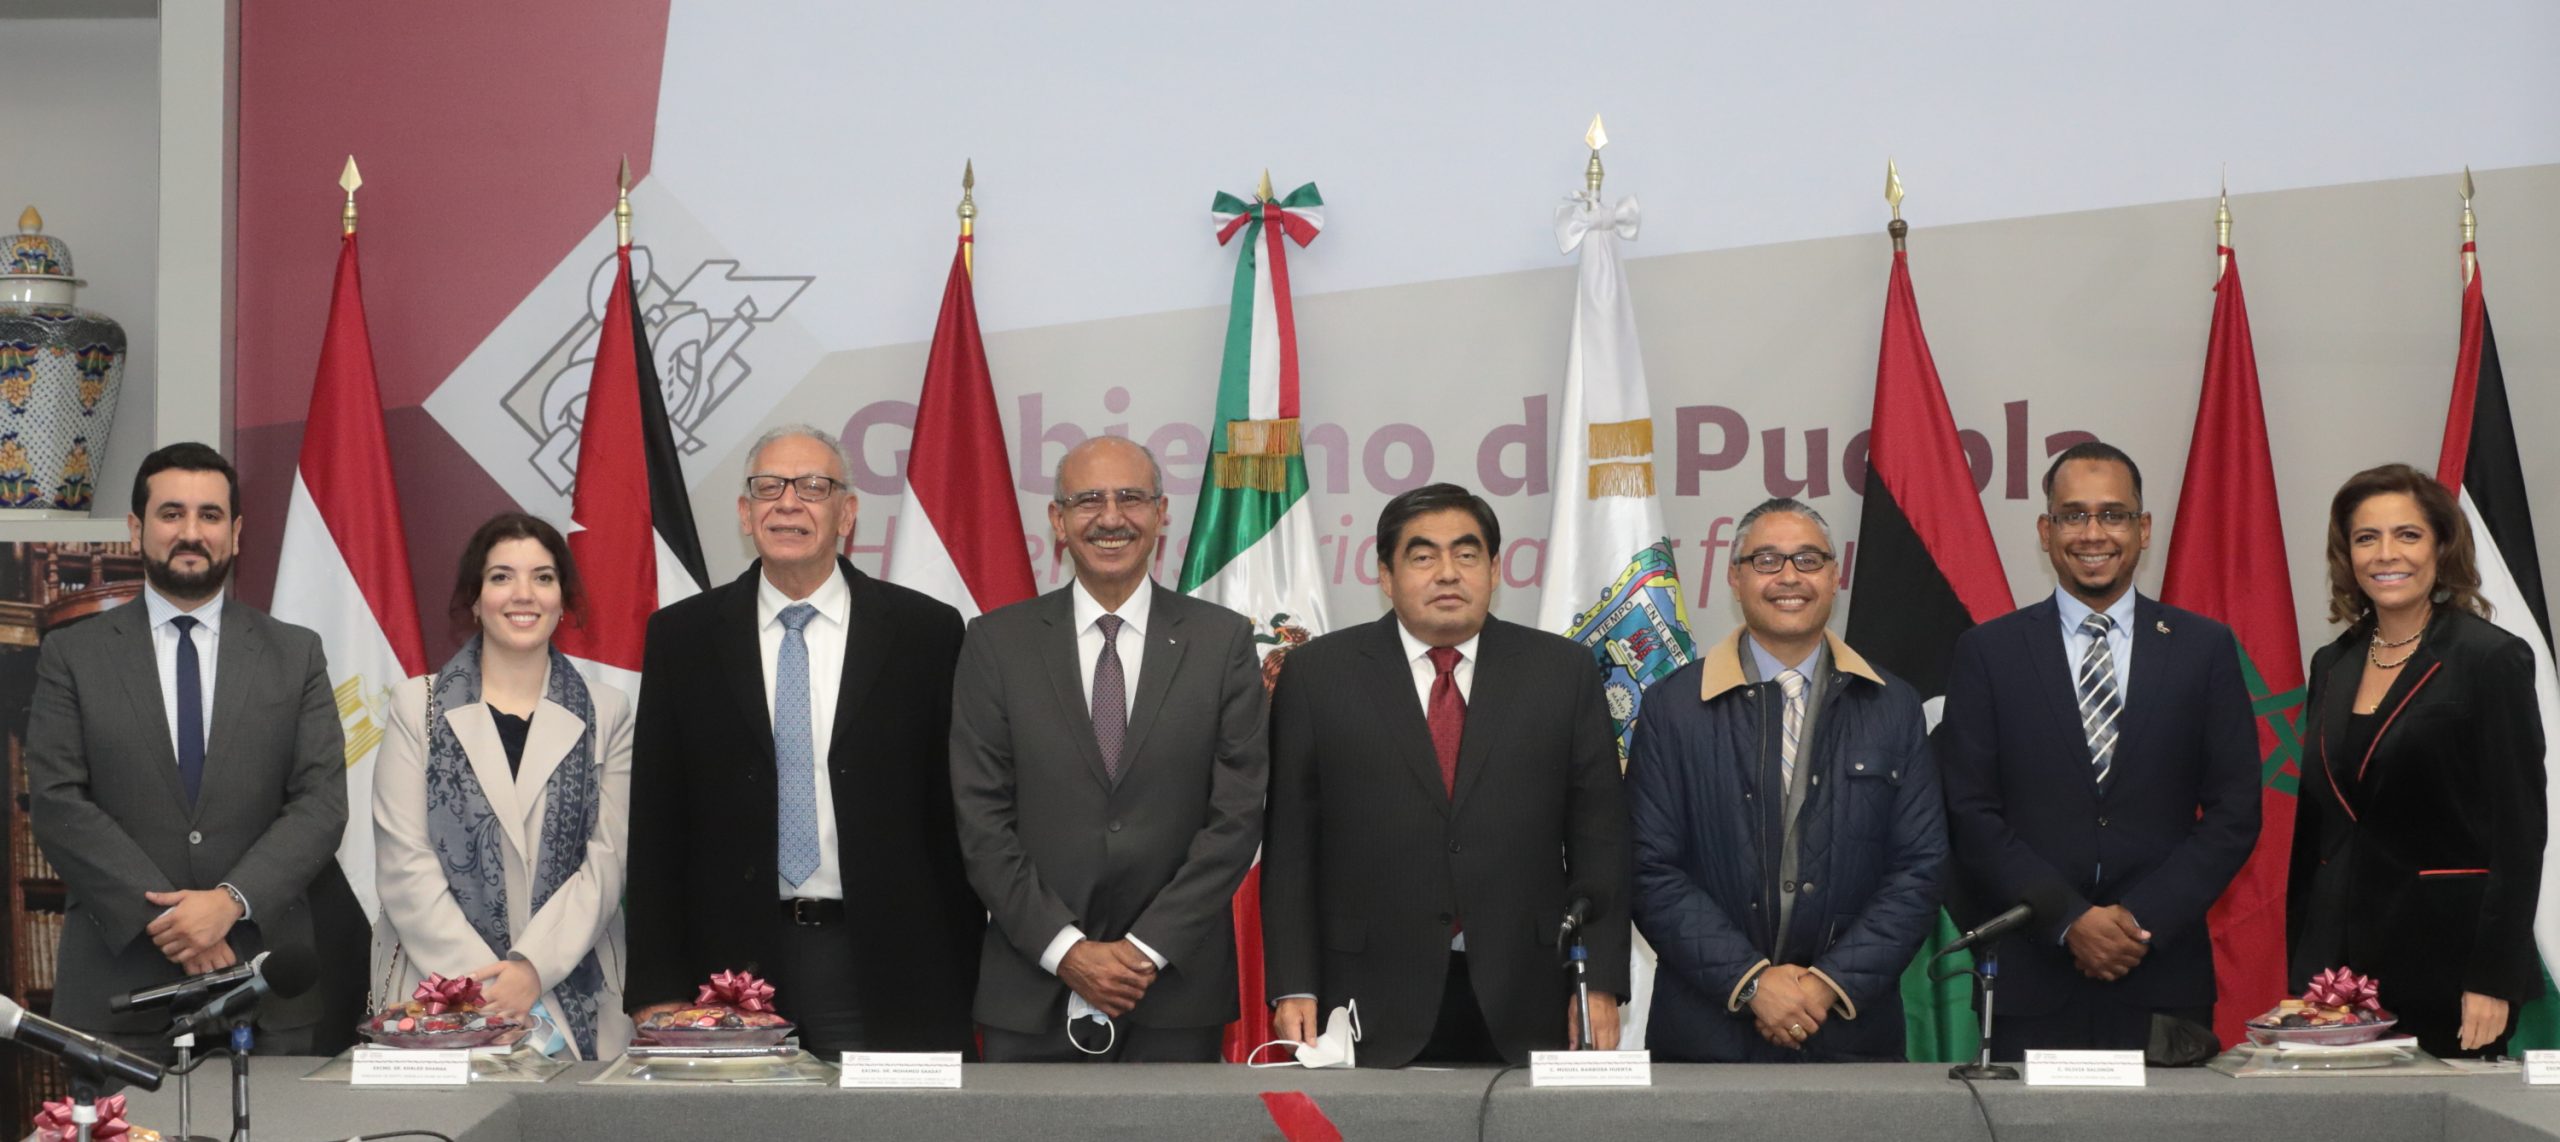 Impulsa Gobierno de Puebla agenda con países árabes